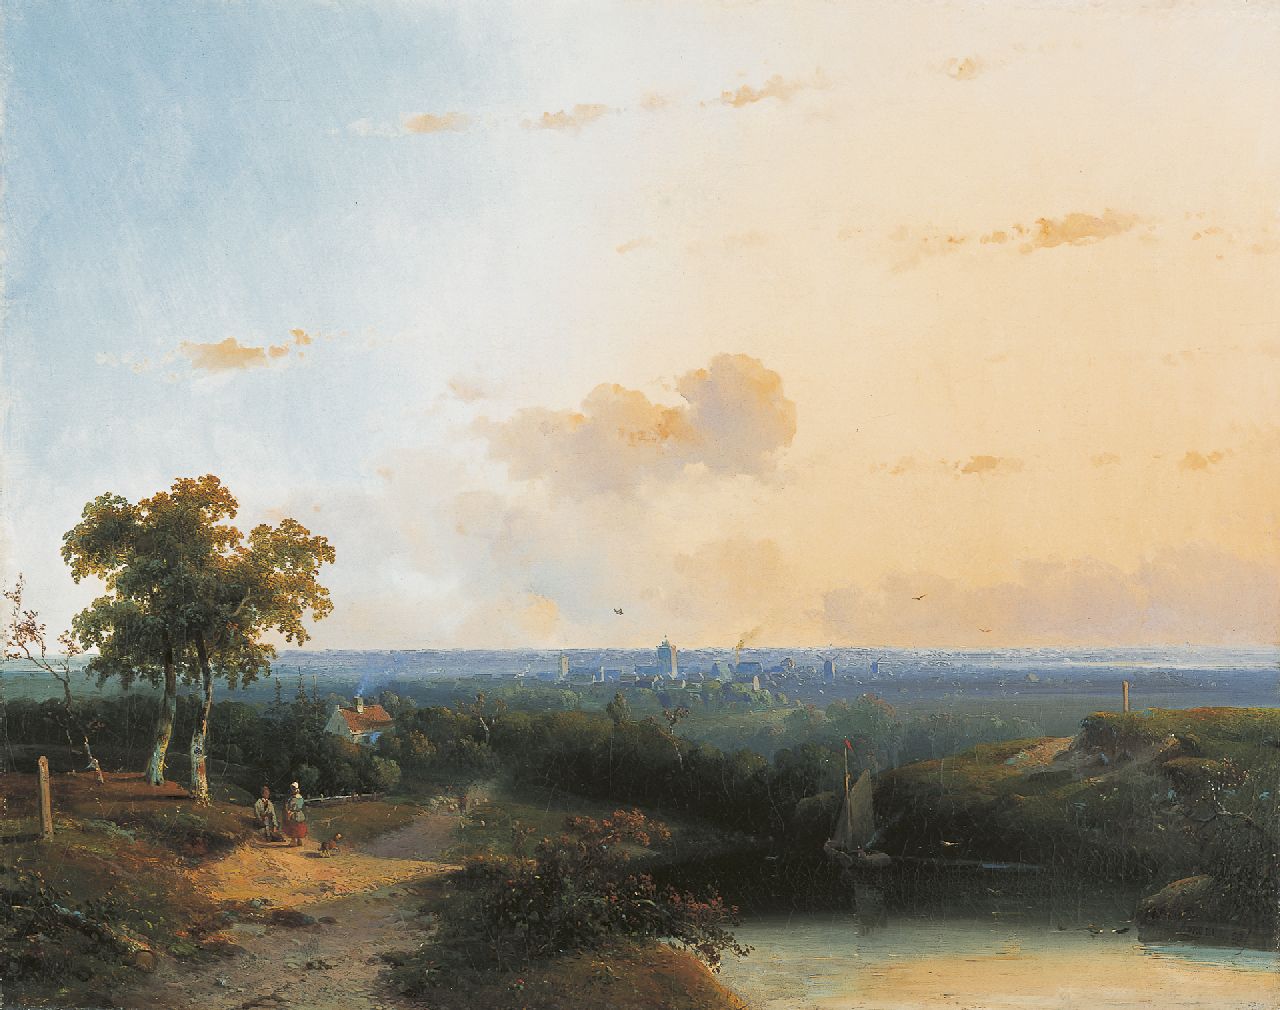 Vrolijk J.A.  | Jacobus 'Adriaan' Vrolijk, Panoramisch zomerlandschap met wandelaars langs een meer, olieverf op doek 50,5 x 63,0 cm, gesigneerd rechtsonder en gedateerd '53